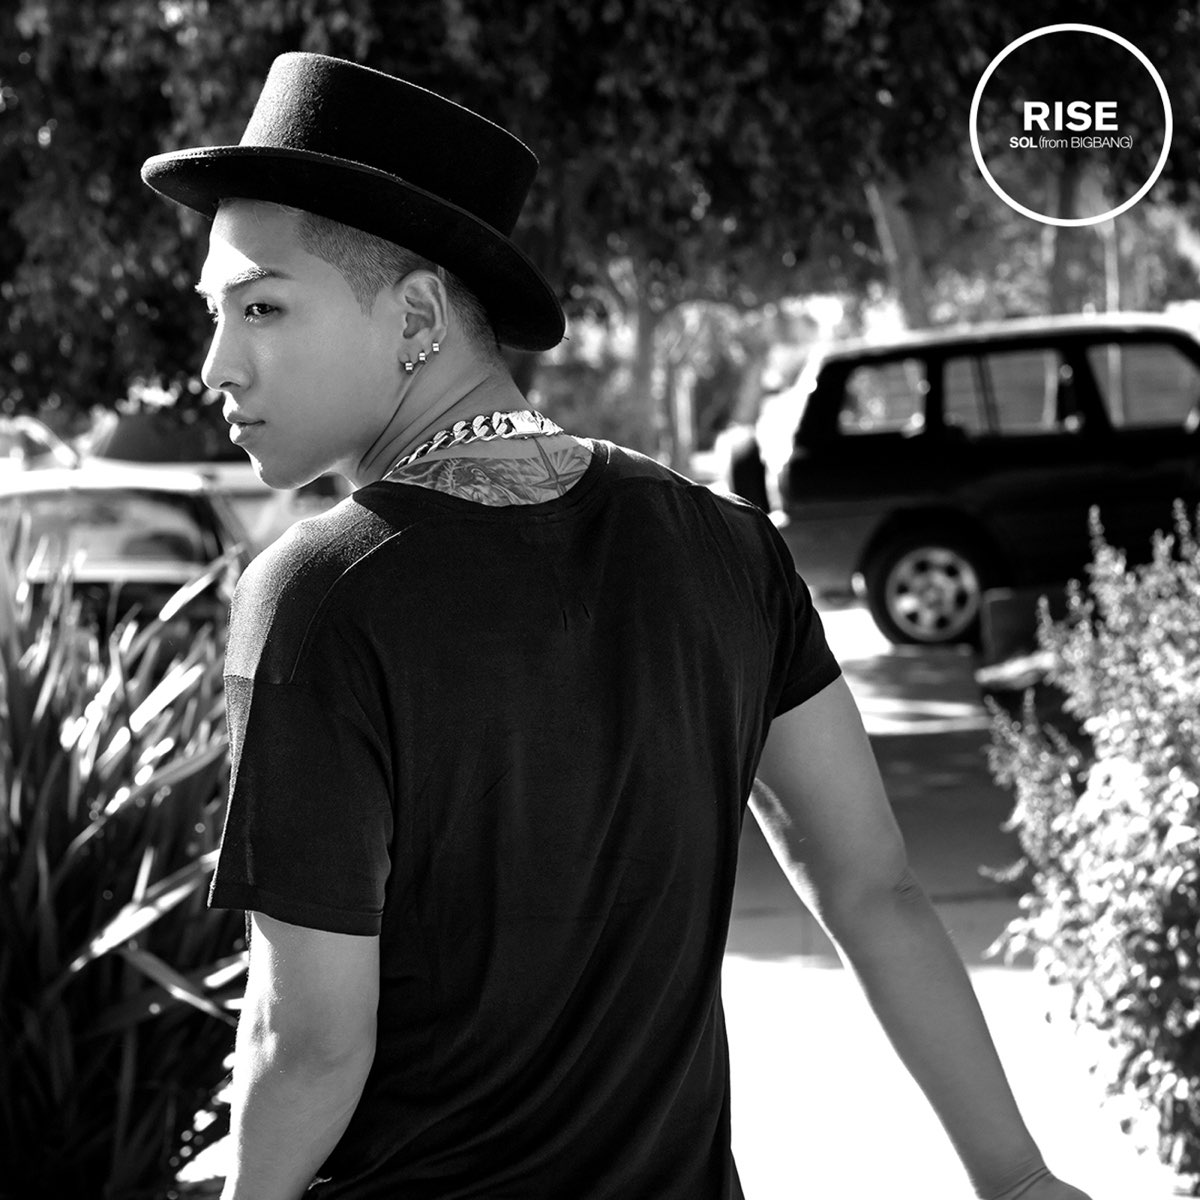 Sol From Bigbang の Rise をapple Musicで